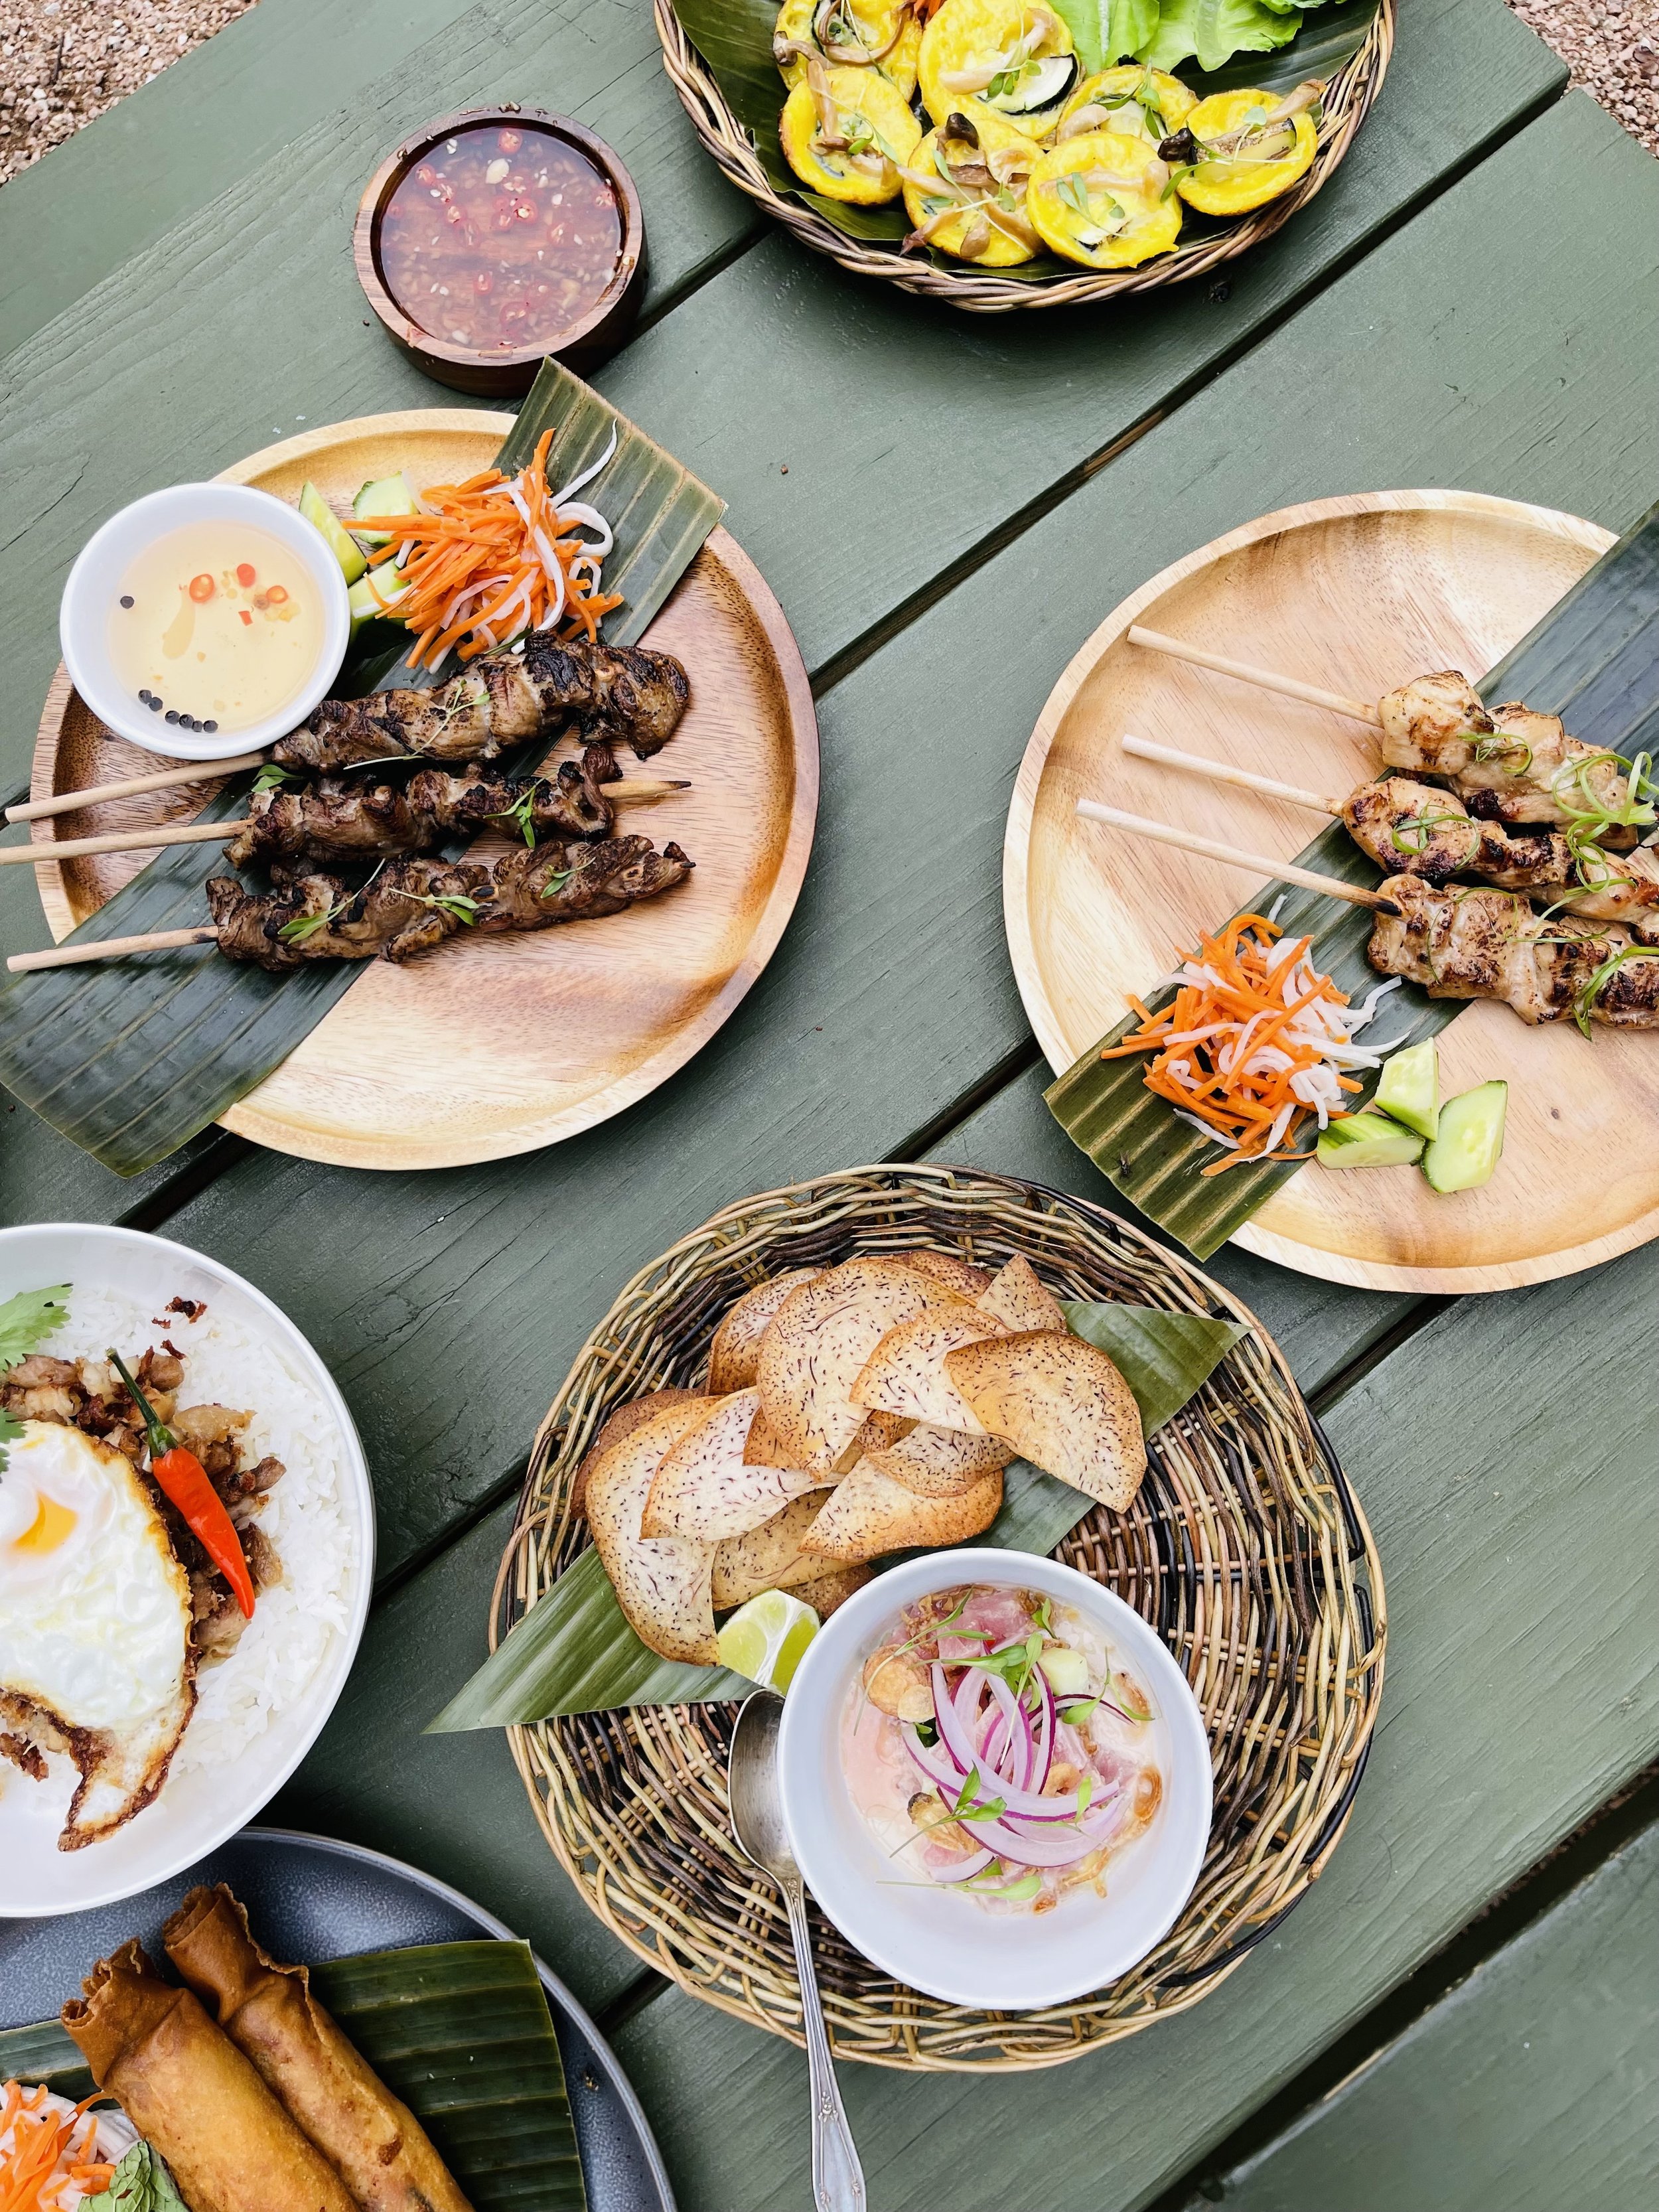 Nhà bếp Việt - Philippines - Bạn thích ẩm thực Việt - Philippines và muốn thưởng thức những món ăn ngon của hai quốc gia này tại nhà? Đến với chúng tôi để khám phá những hình ảnh đầy màu sắc và sống động về những nét văn hóa đa dạng trong ẩm thực hai nước này.